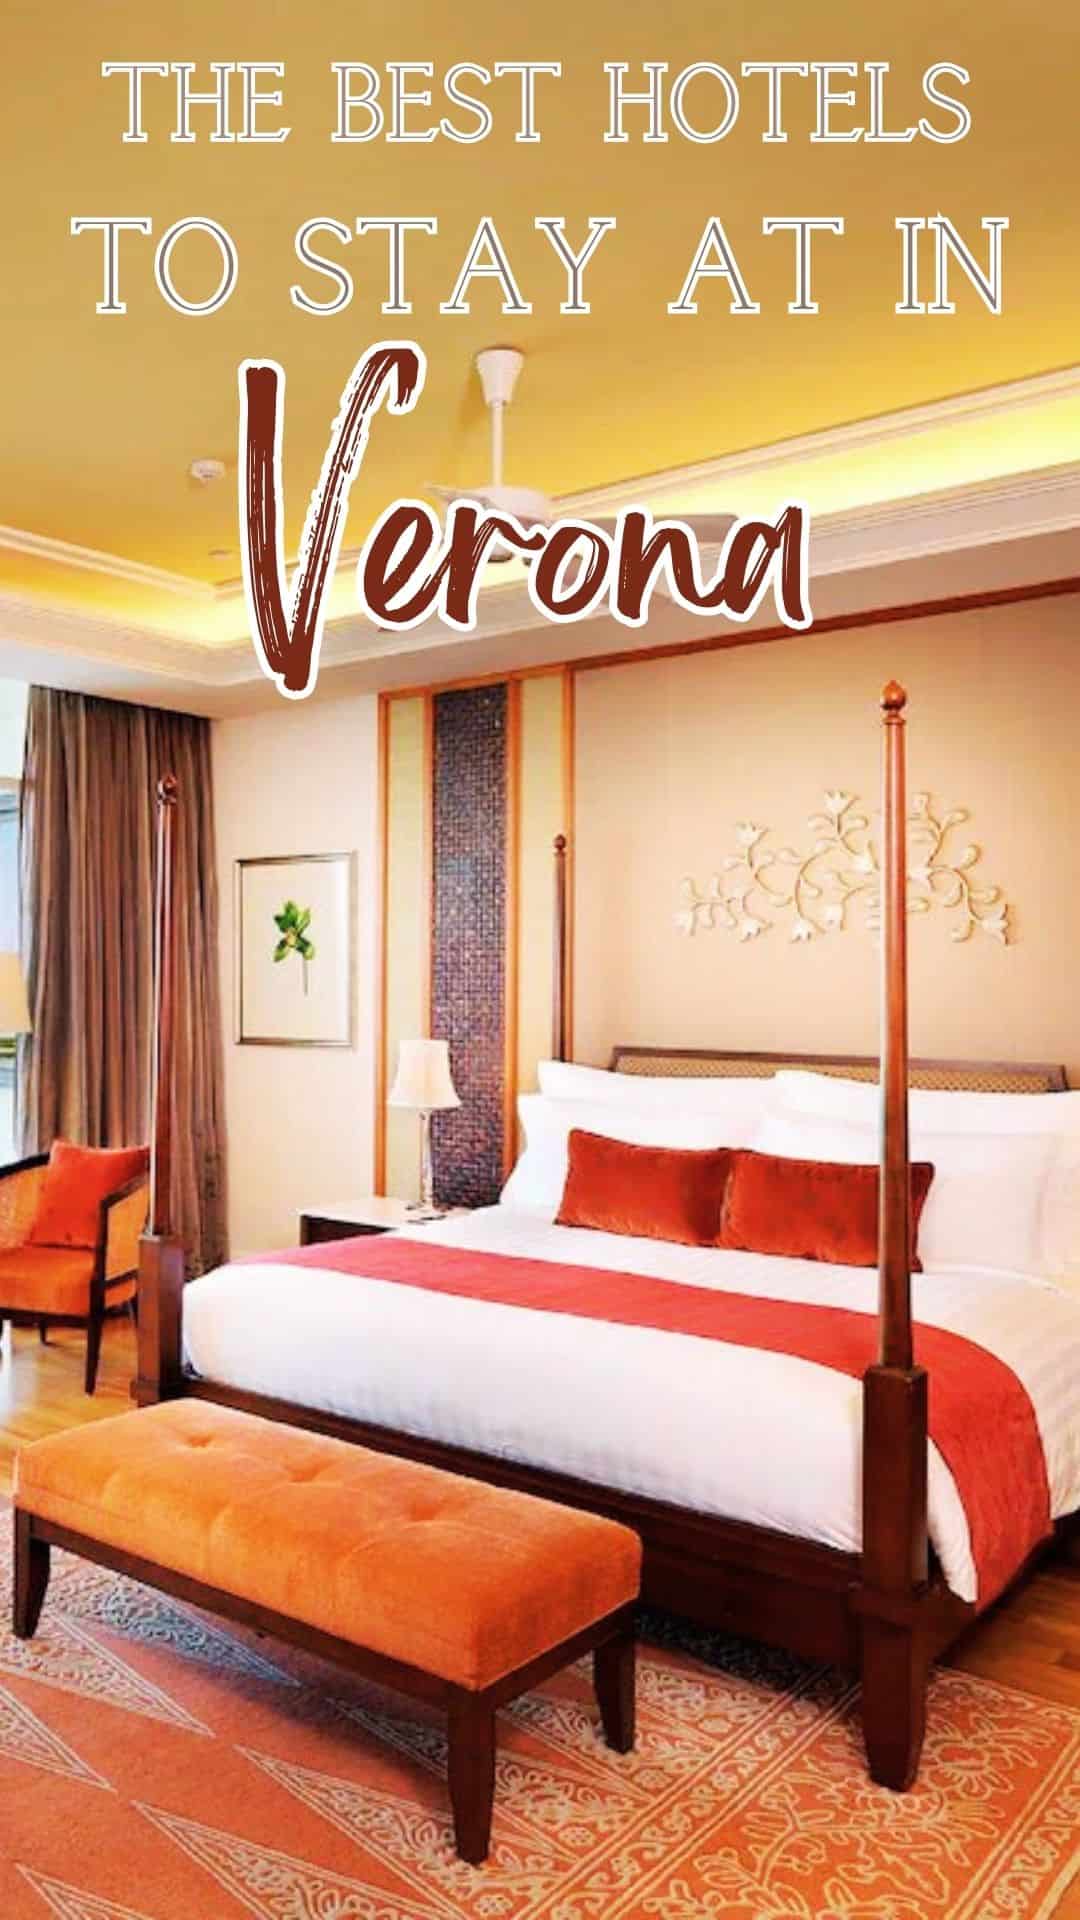 luxury boutique hotel room in Verona, Italy